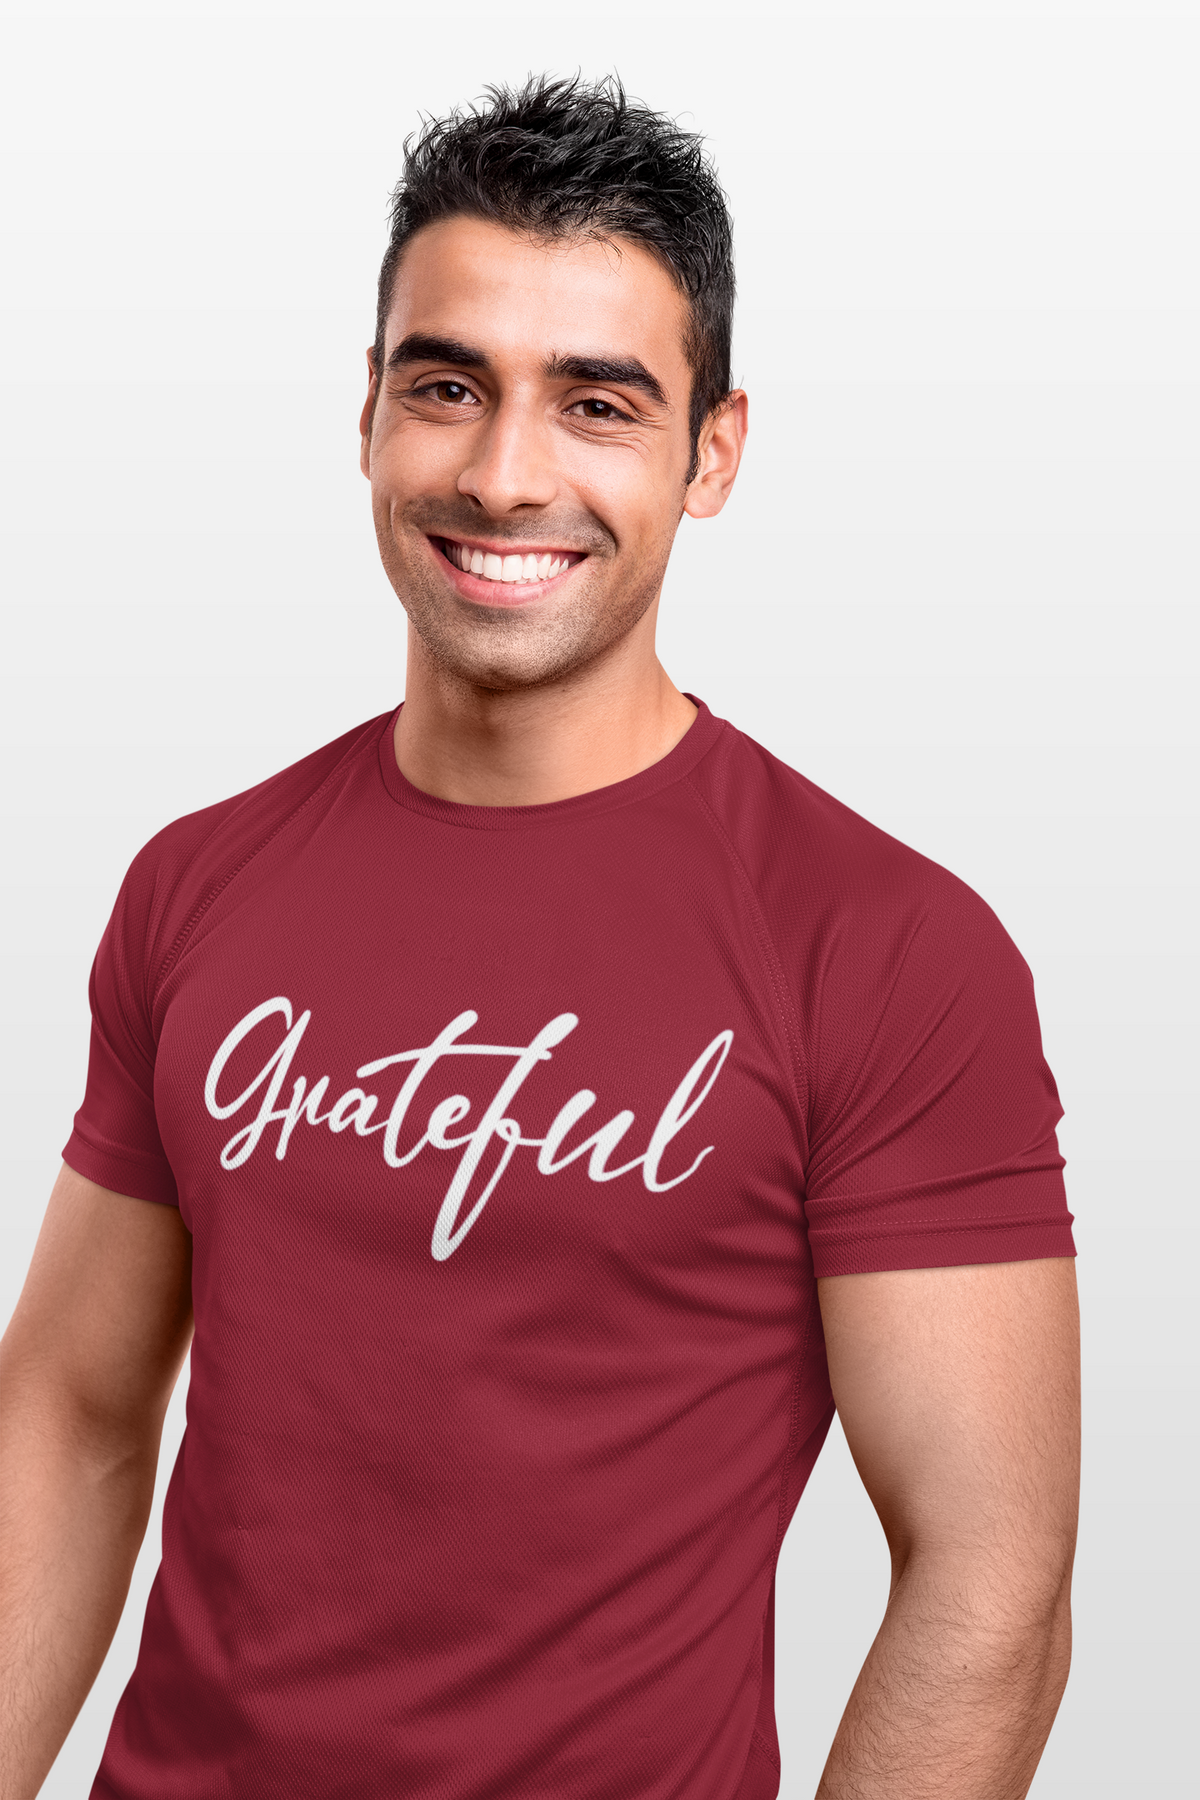 Grateful (Crew neck and Sweatshirt)